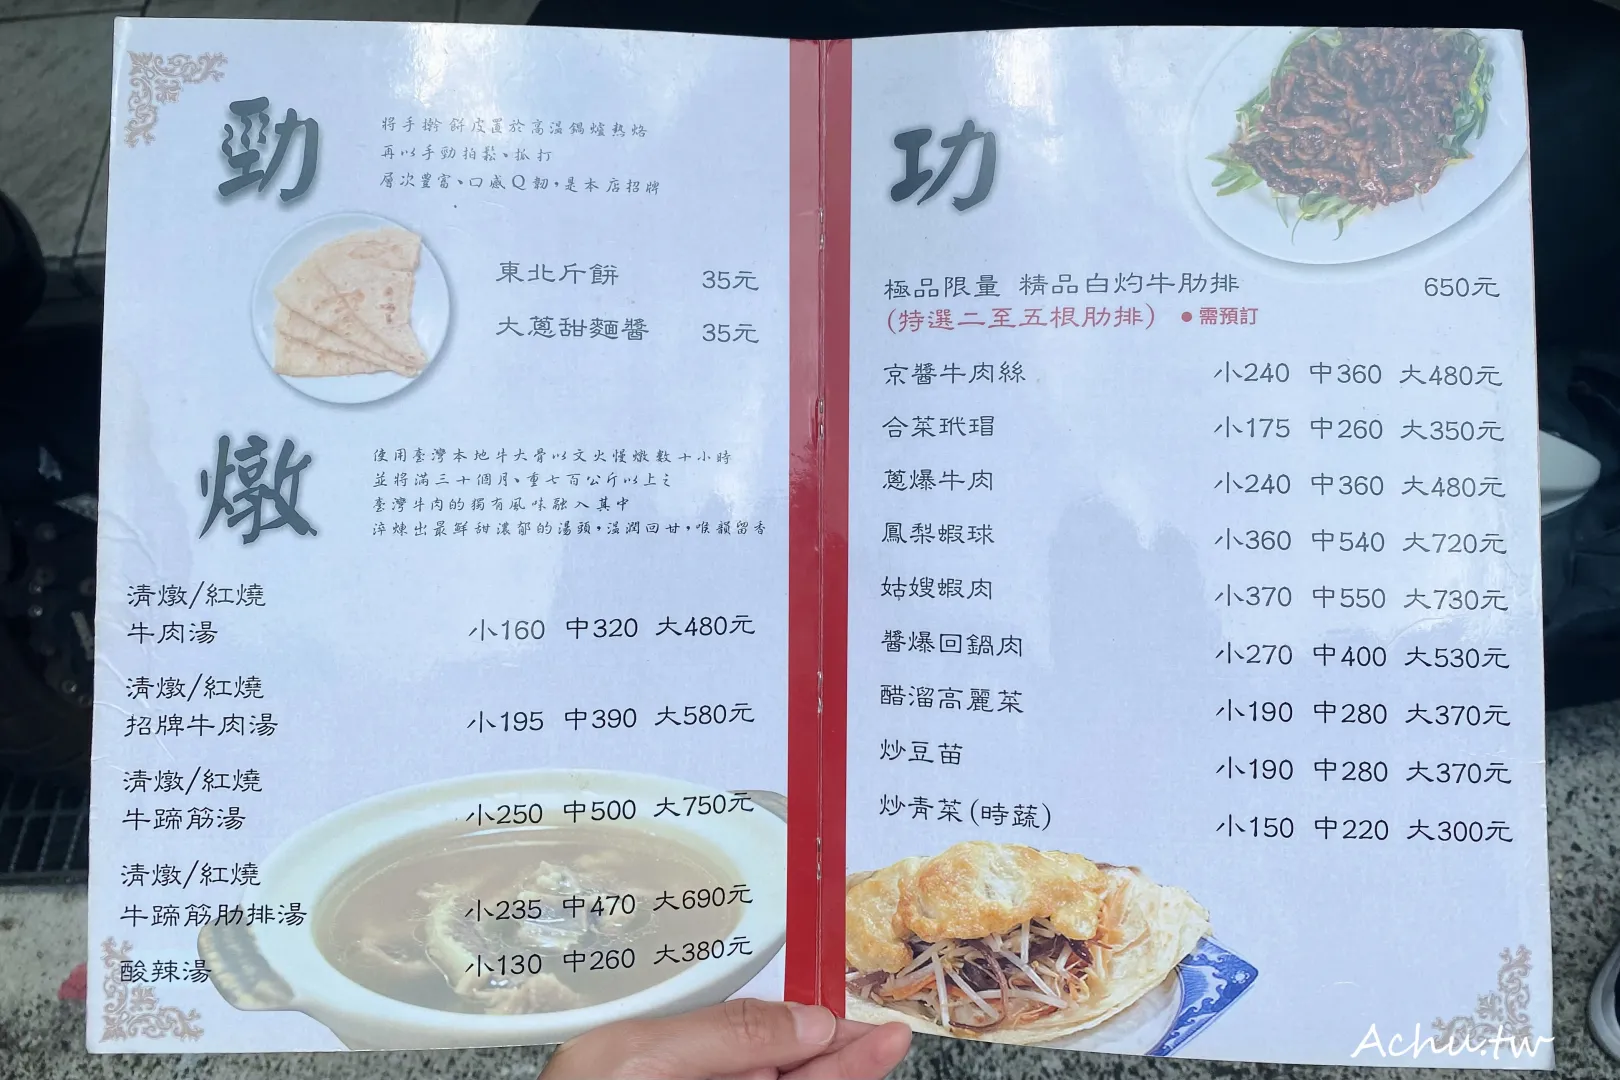 清真中國牛肉麵食館